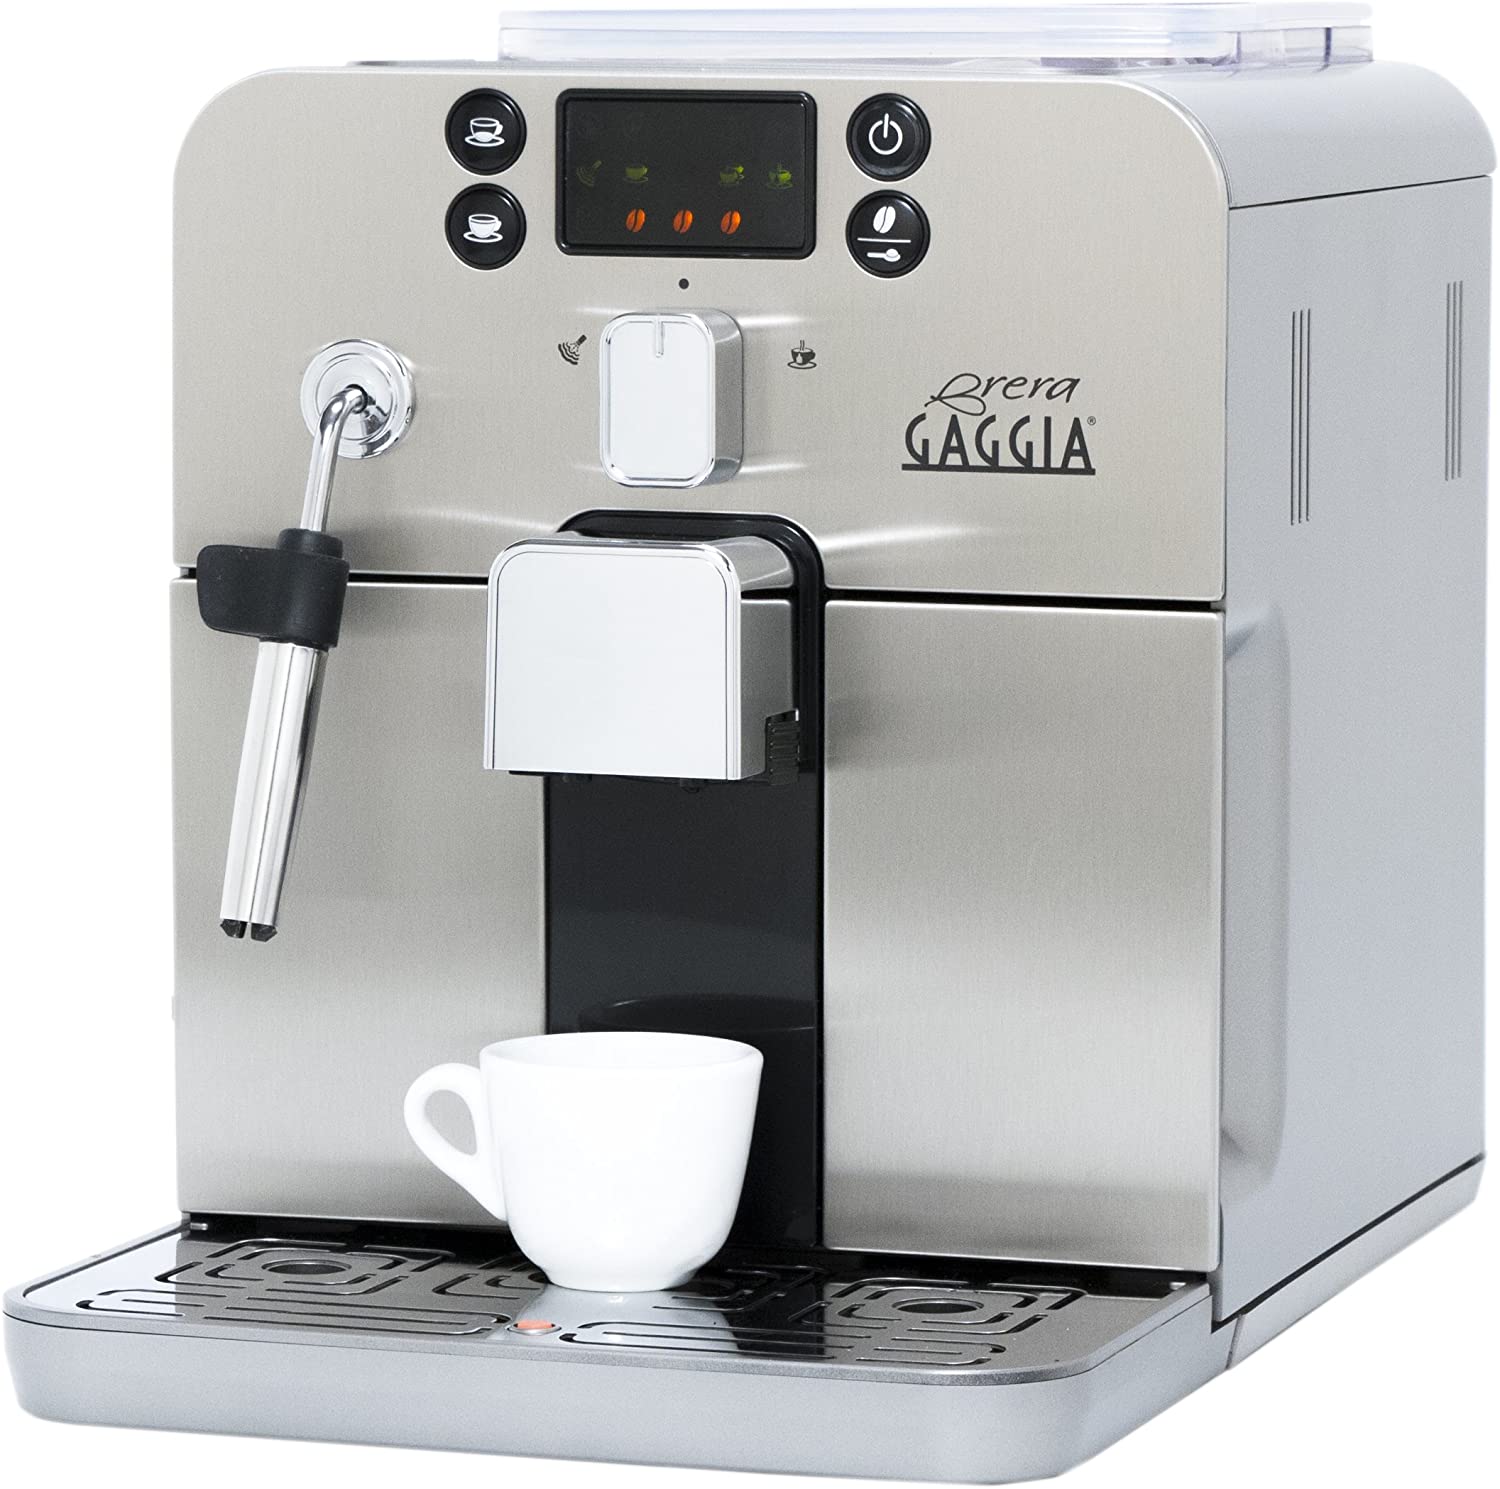 Gaggia Brera Super Automatic Espresso Machine Review